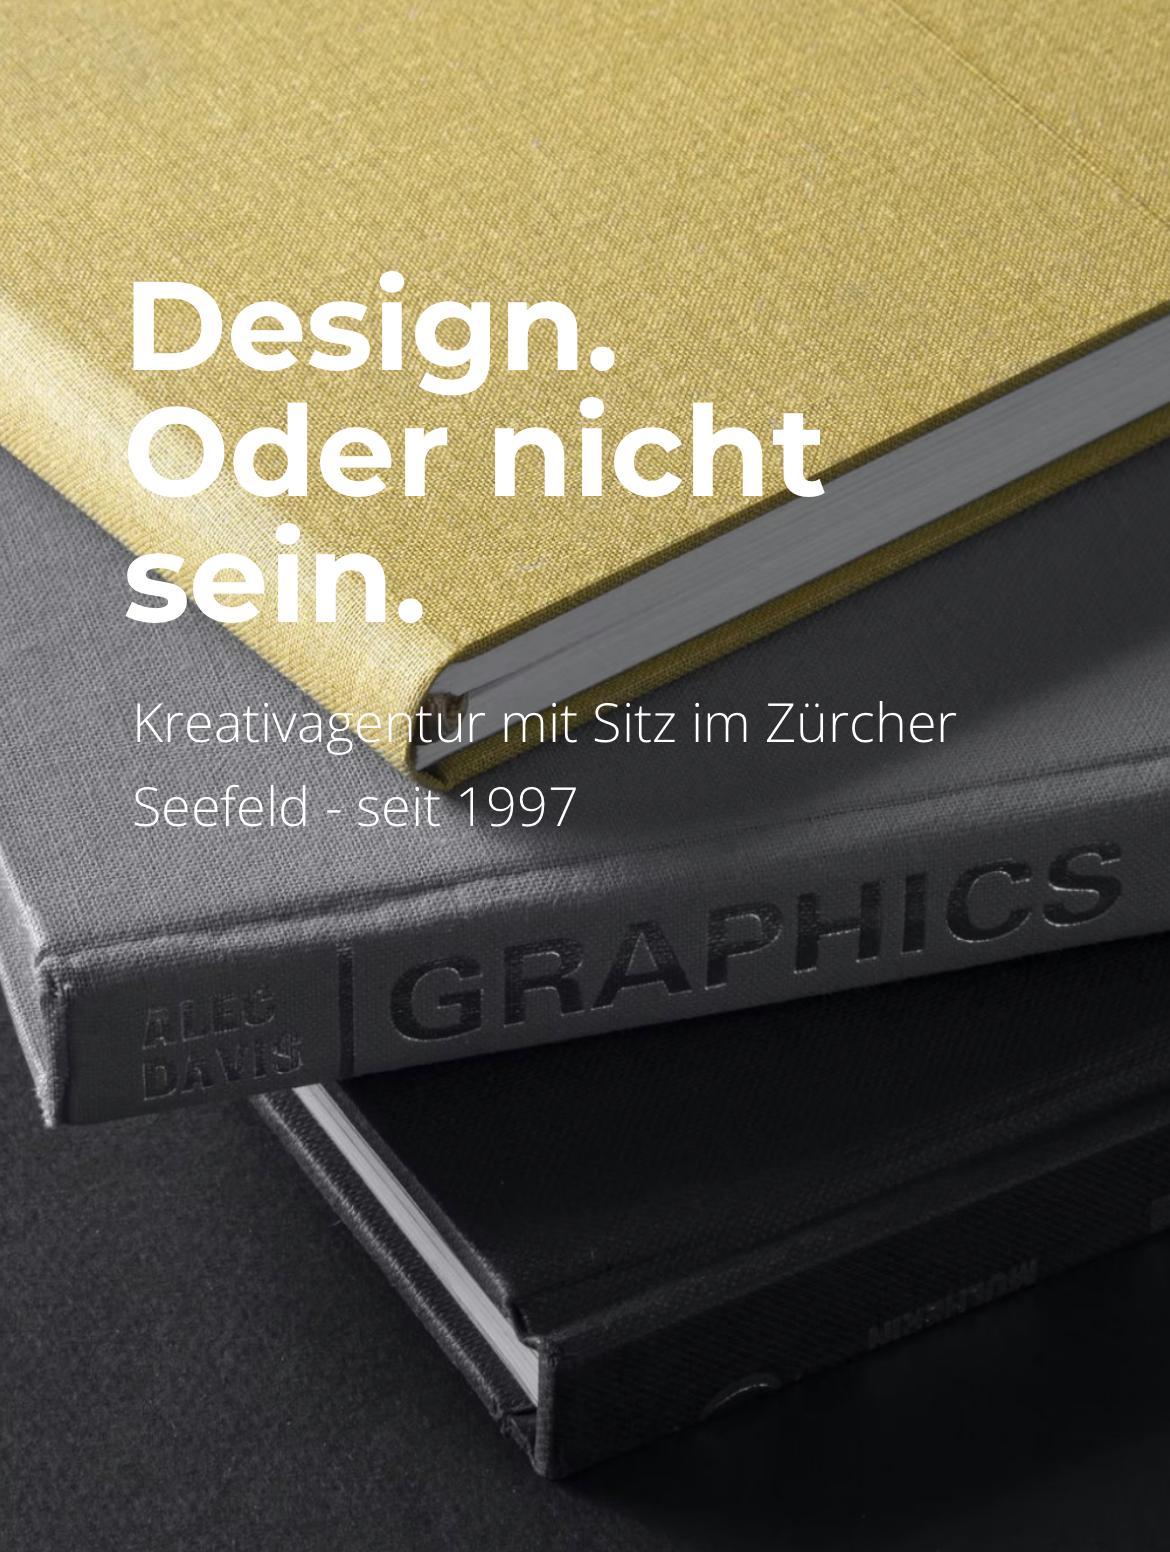  http://www.design-labor.ch